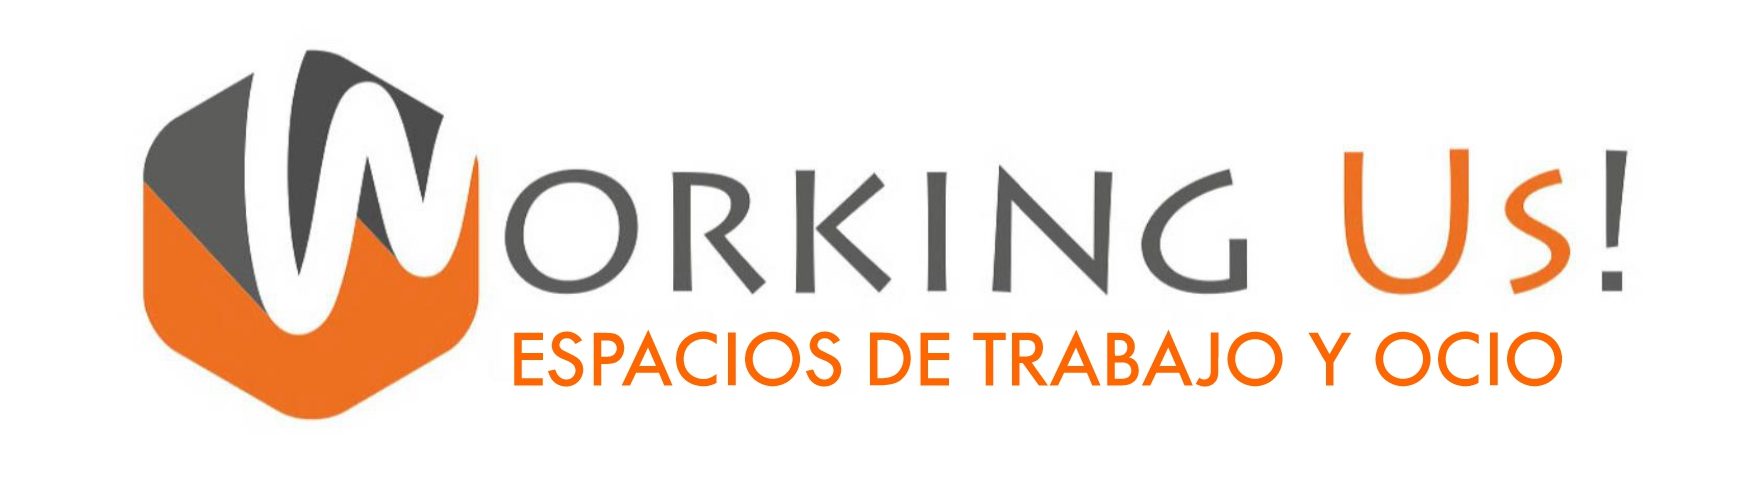 Working Us! Espacios de trabajo y ocio en Alcorcón